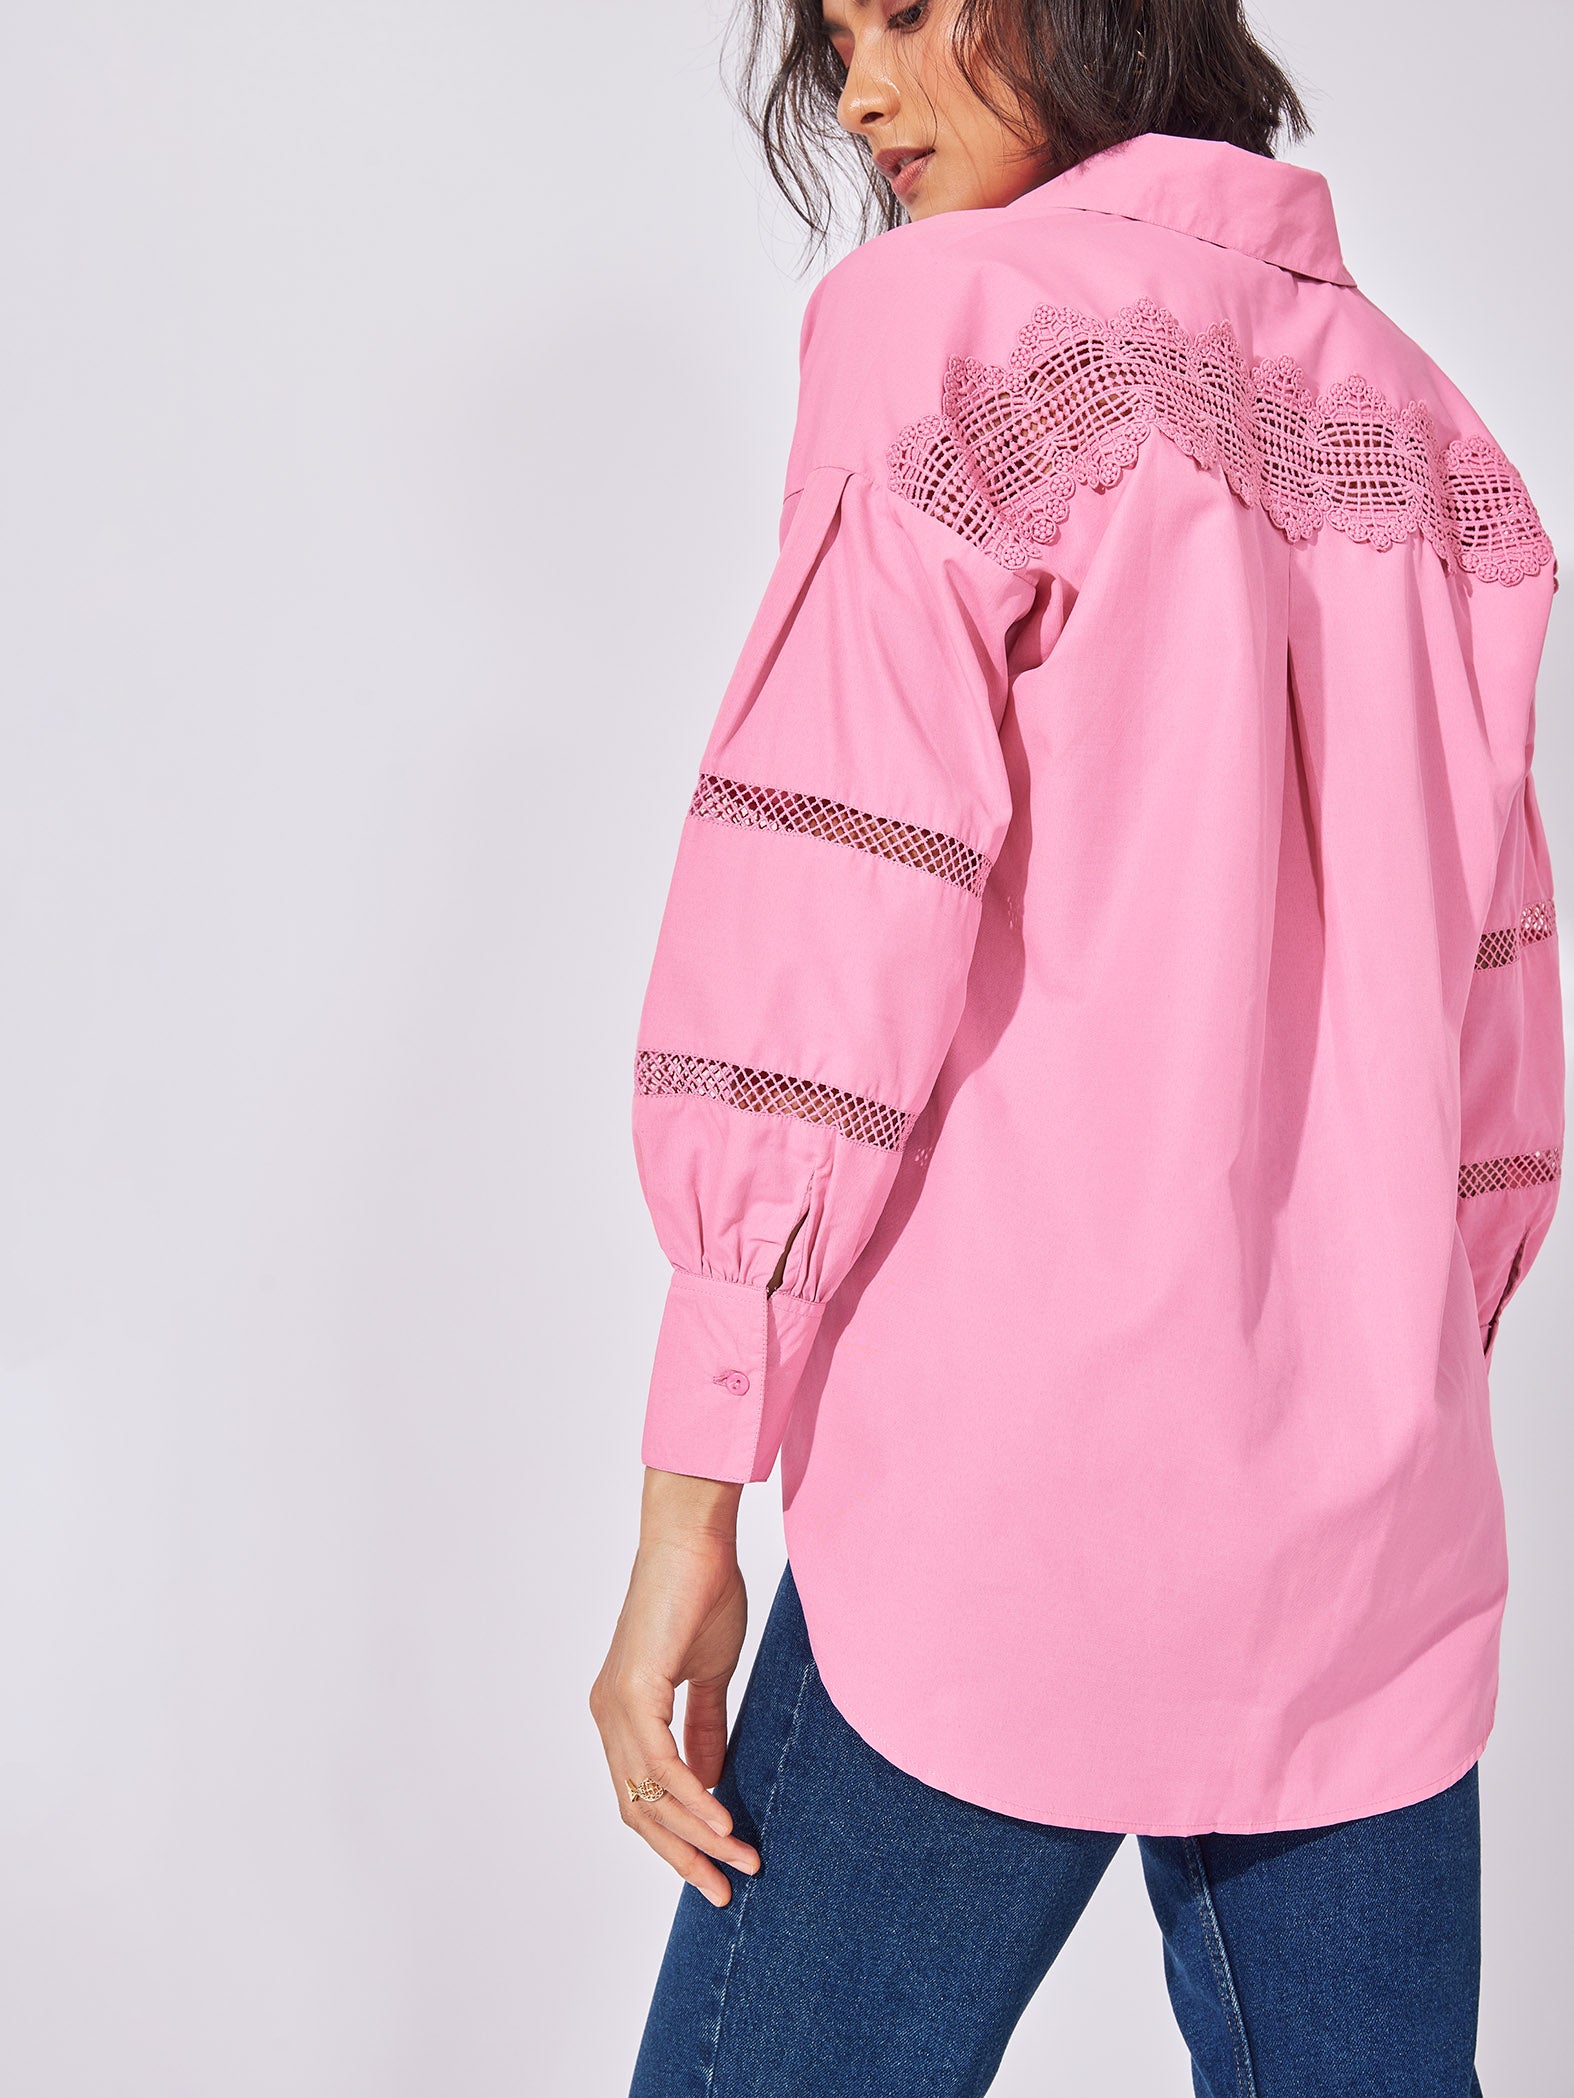 Pink Yoke Lace Insert Shirt